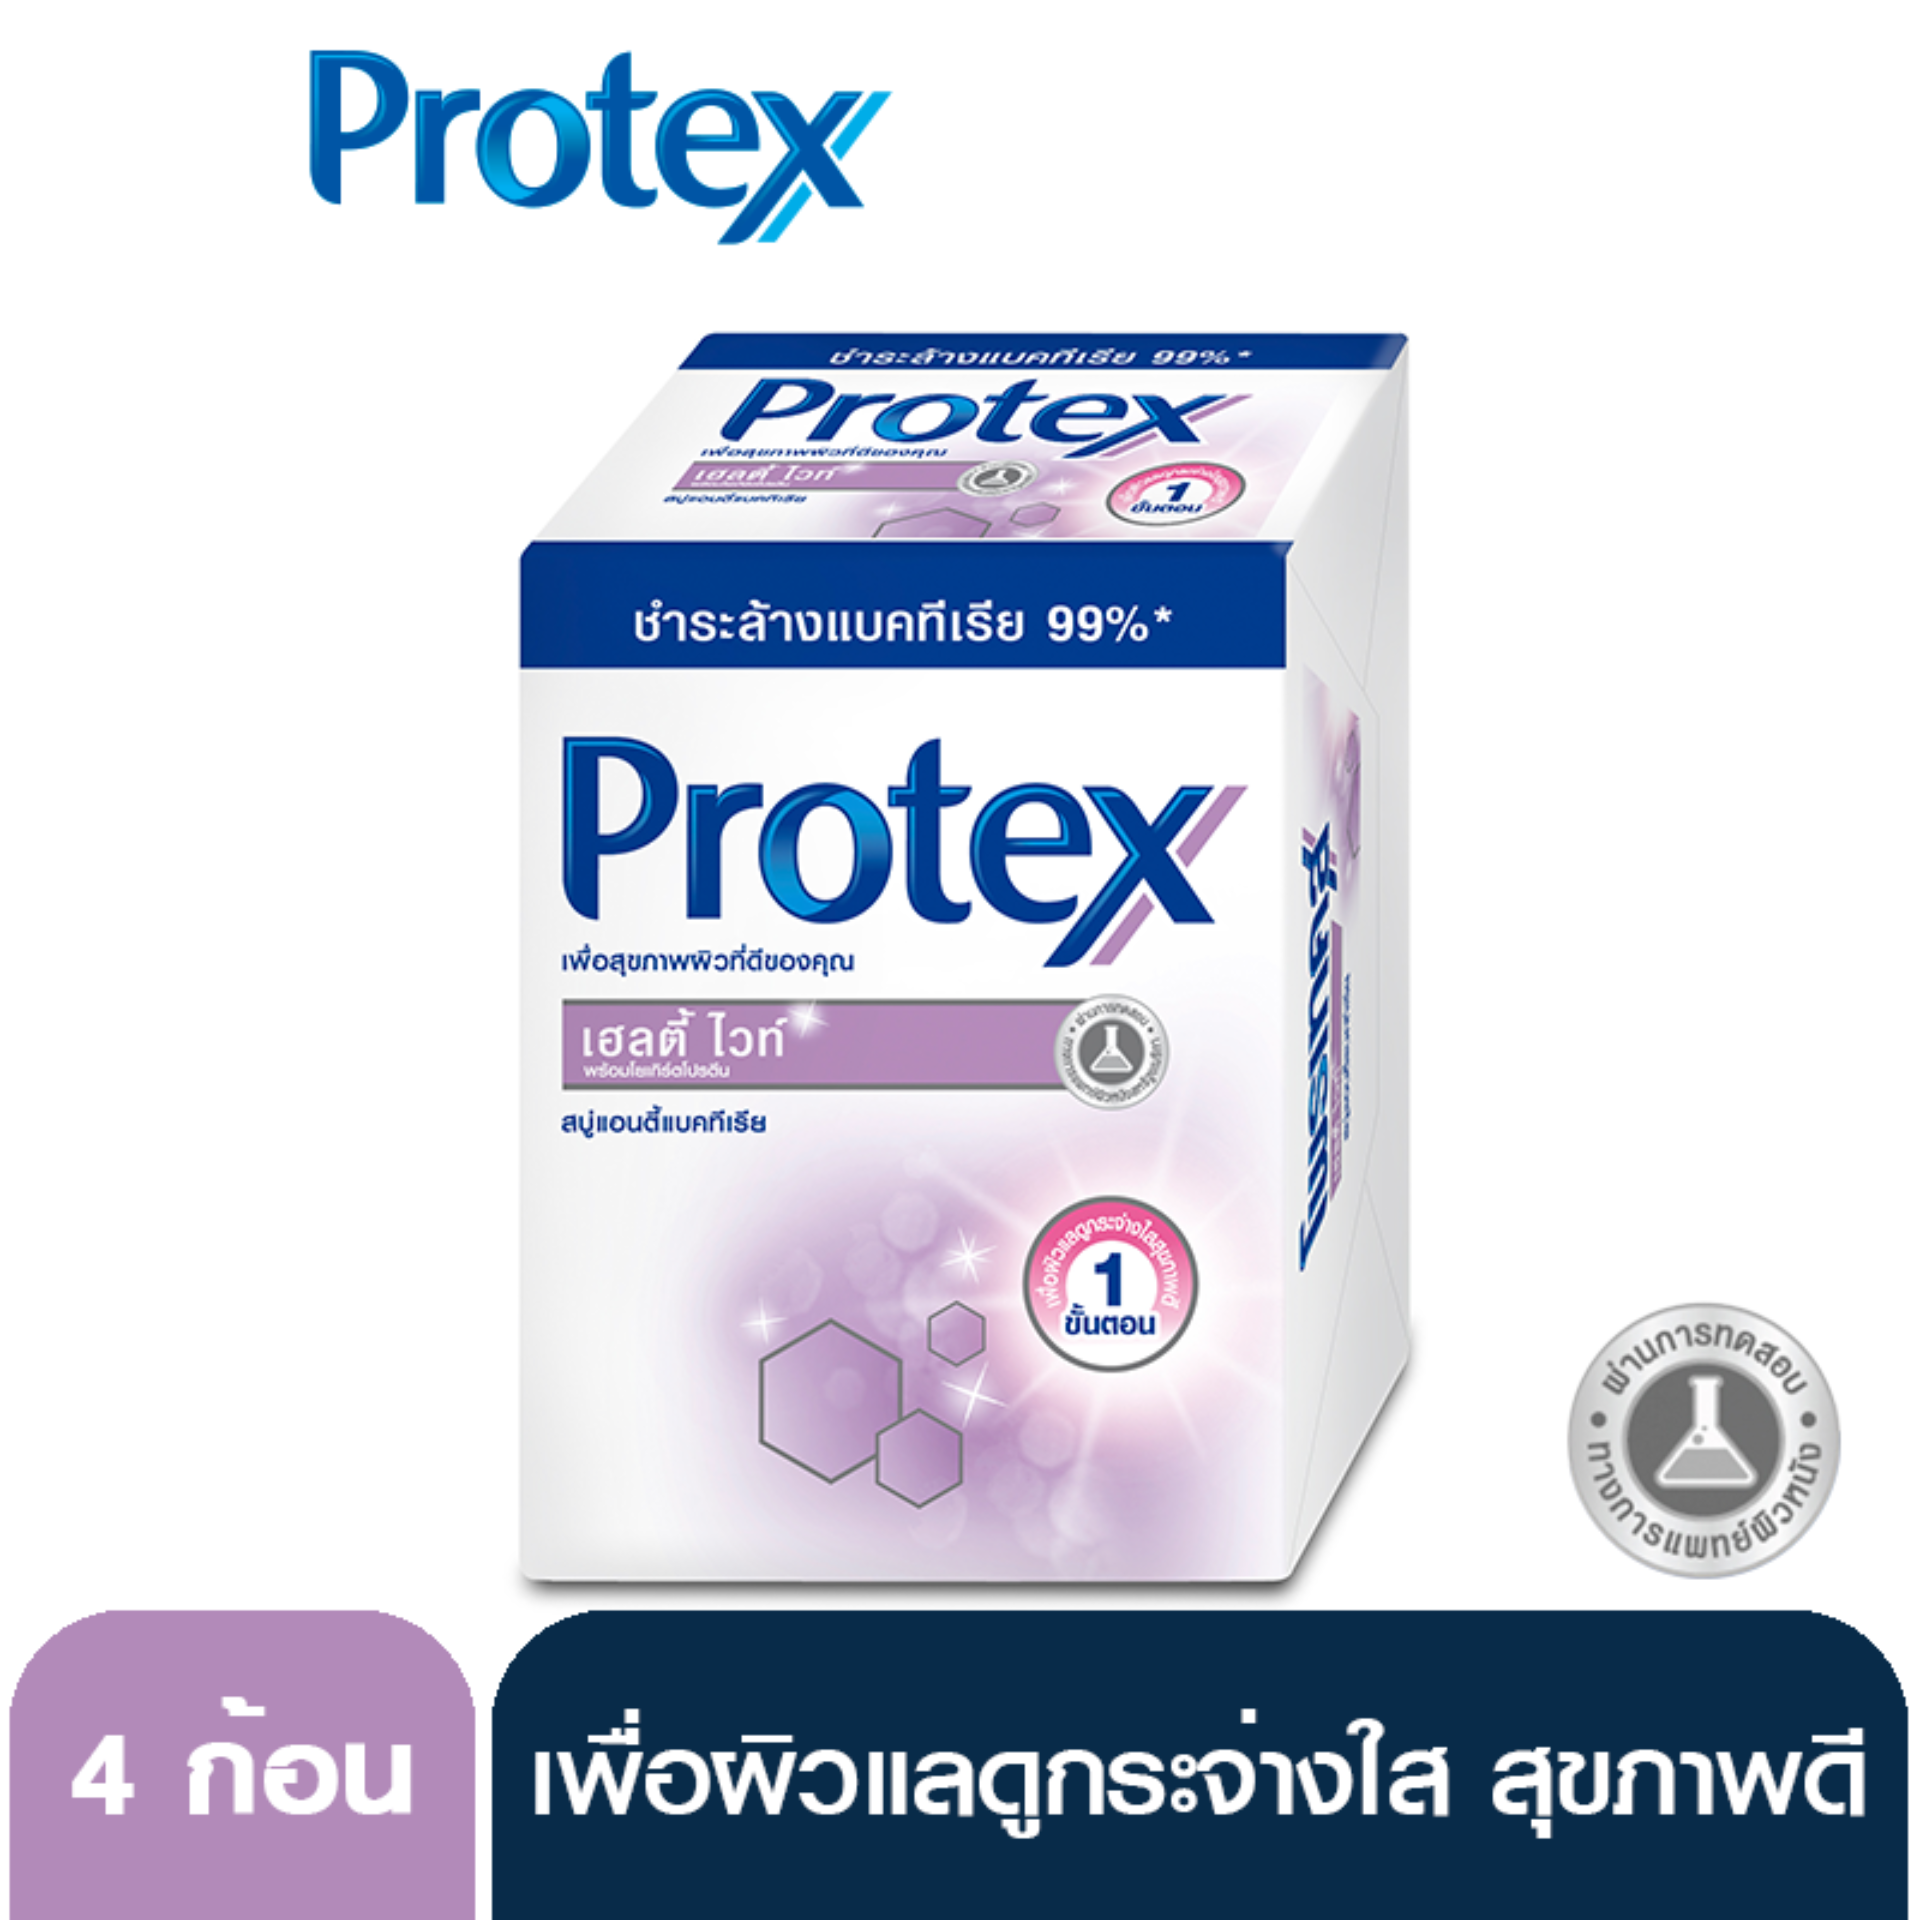 สบู่ก้อน โพรเทคส์ เฮลตี้ ไวท์ 65 กรัม แพ็ค 4 ก้อน Protex Healthy White Soap 65 g. Pack 4 Pieces